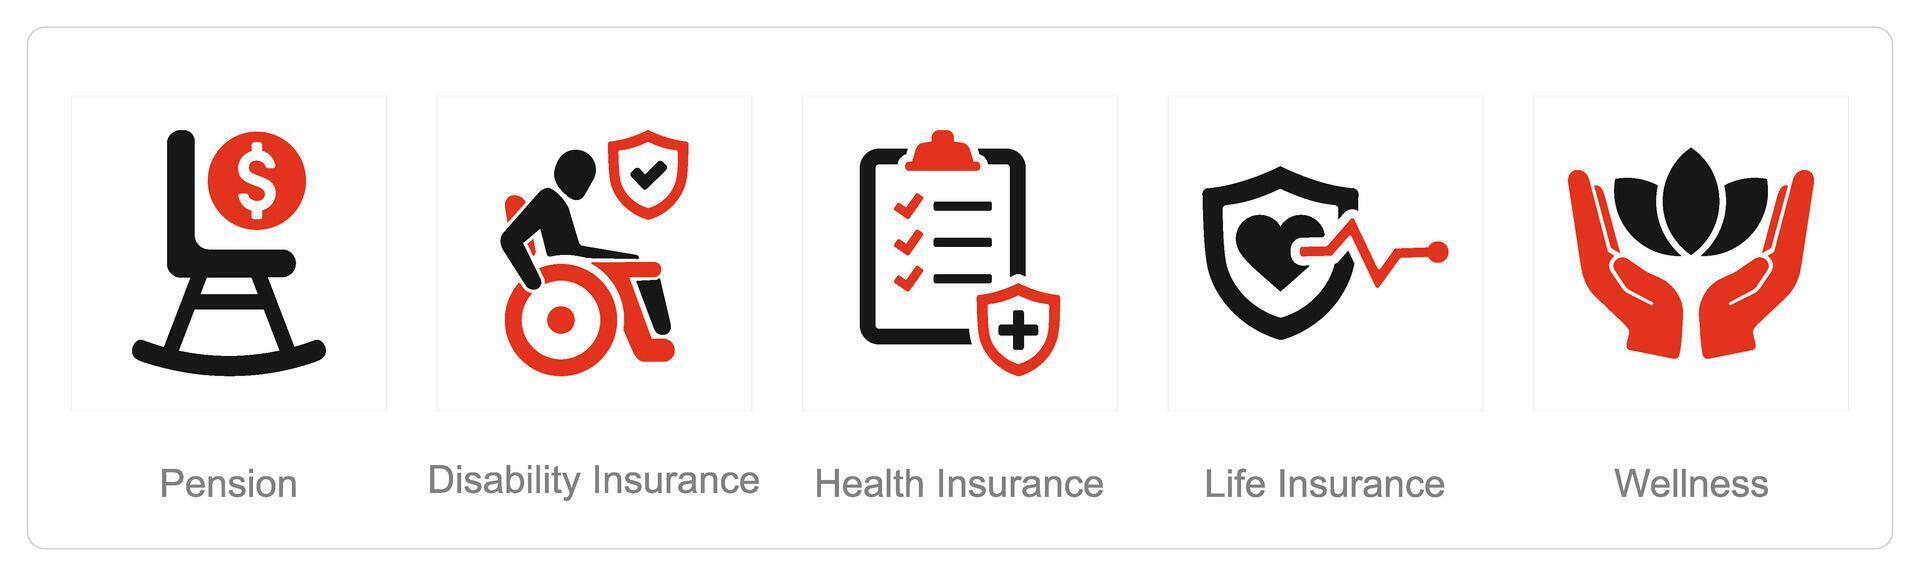 un' impostato di 5 dipendente benefici icone come pensione, invalidità assicurazione, Salute assicurazione vettore